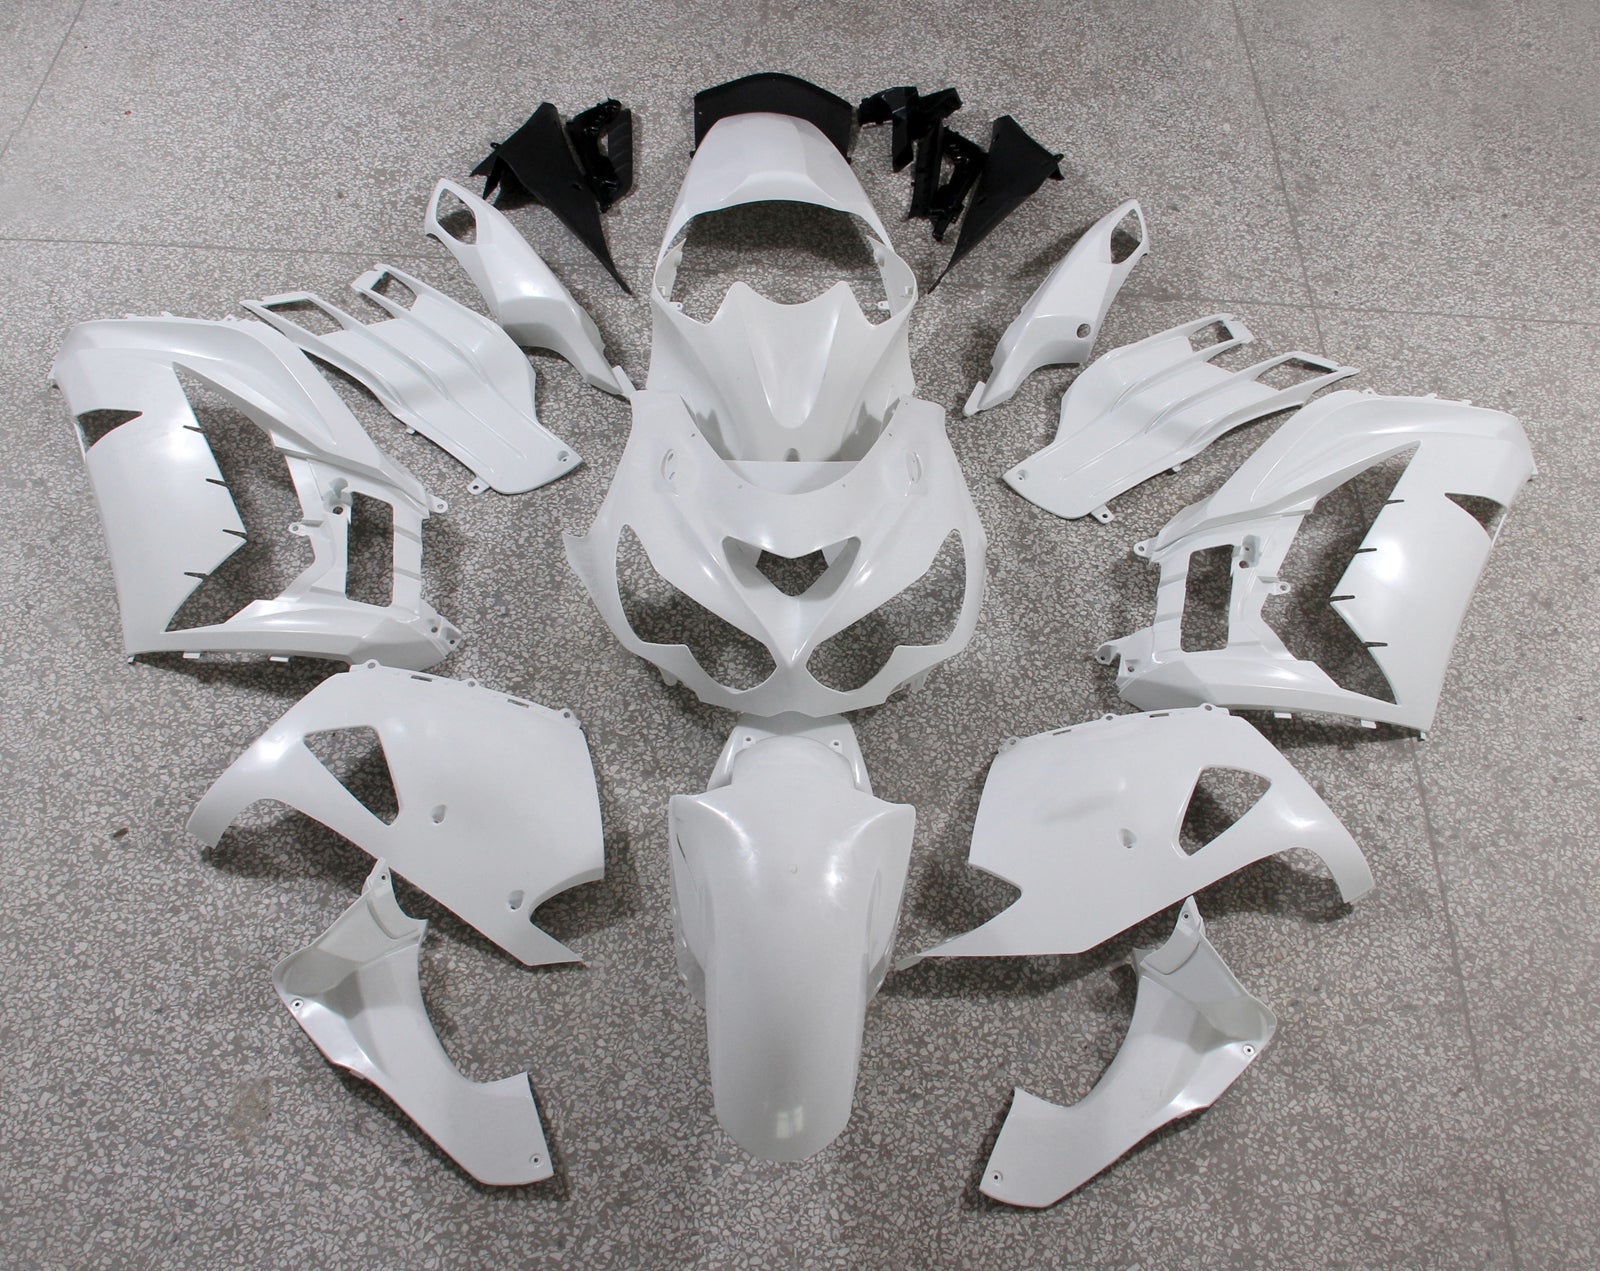 for-ninja-zx14r-2012-2016-white-bodywork-fairing-abs-injection-molded-plastics-set-4